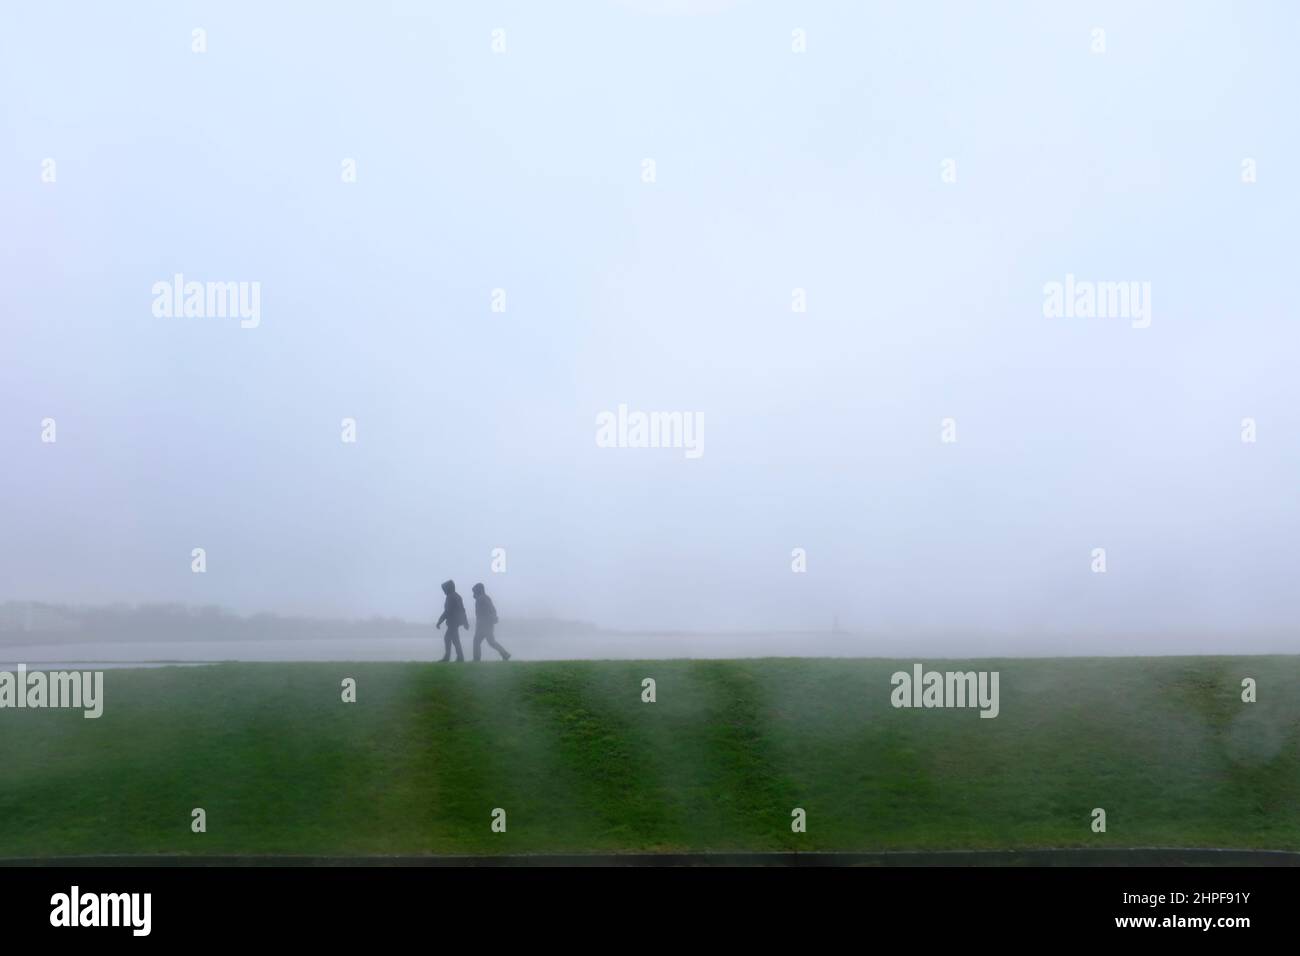 09.02.2022, Cuxhaven, Niedersachsen, Deutschland - zwei Spaziergaenger im Regen auf dem Deich an der Grimmershörner Bucht in Cuxhaven an einem Wintert Stock Photo